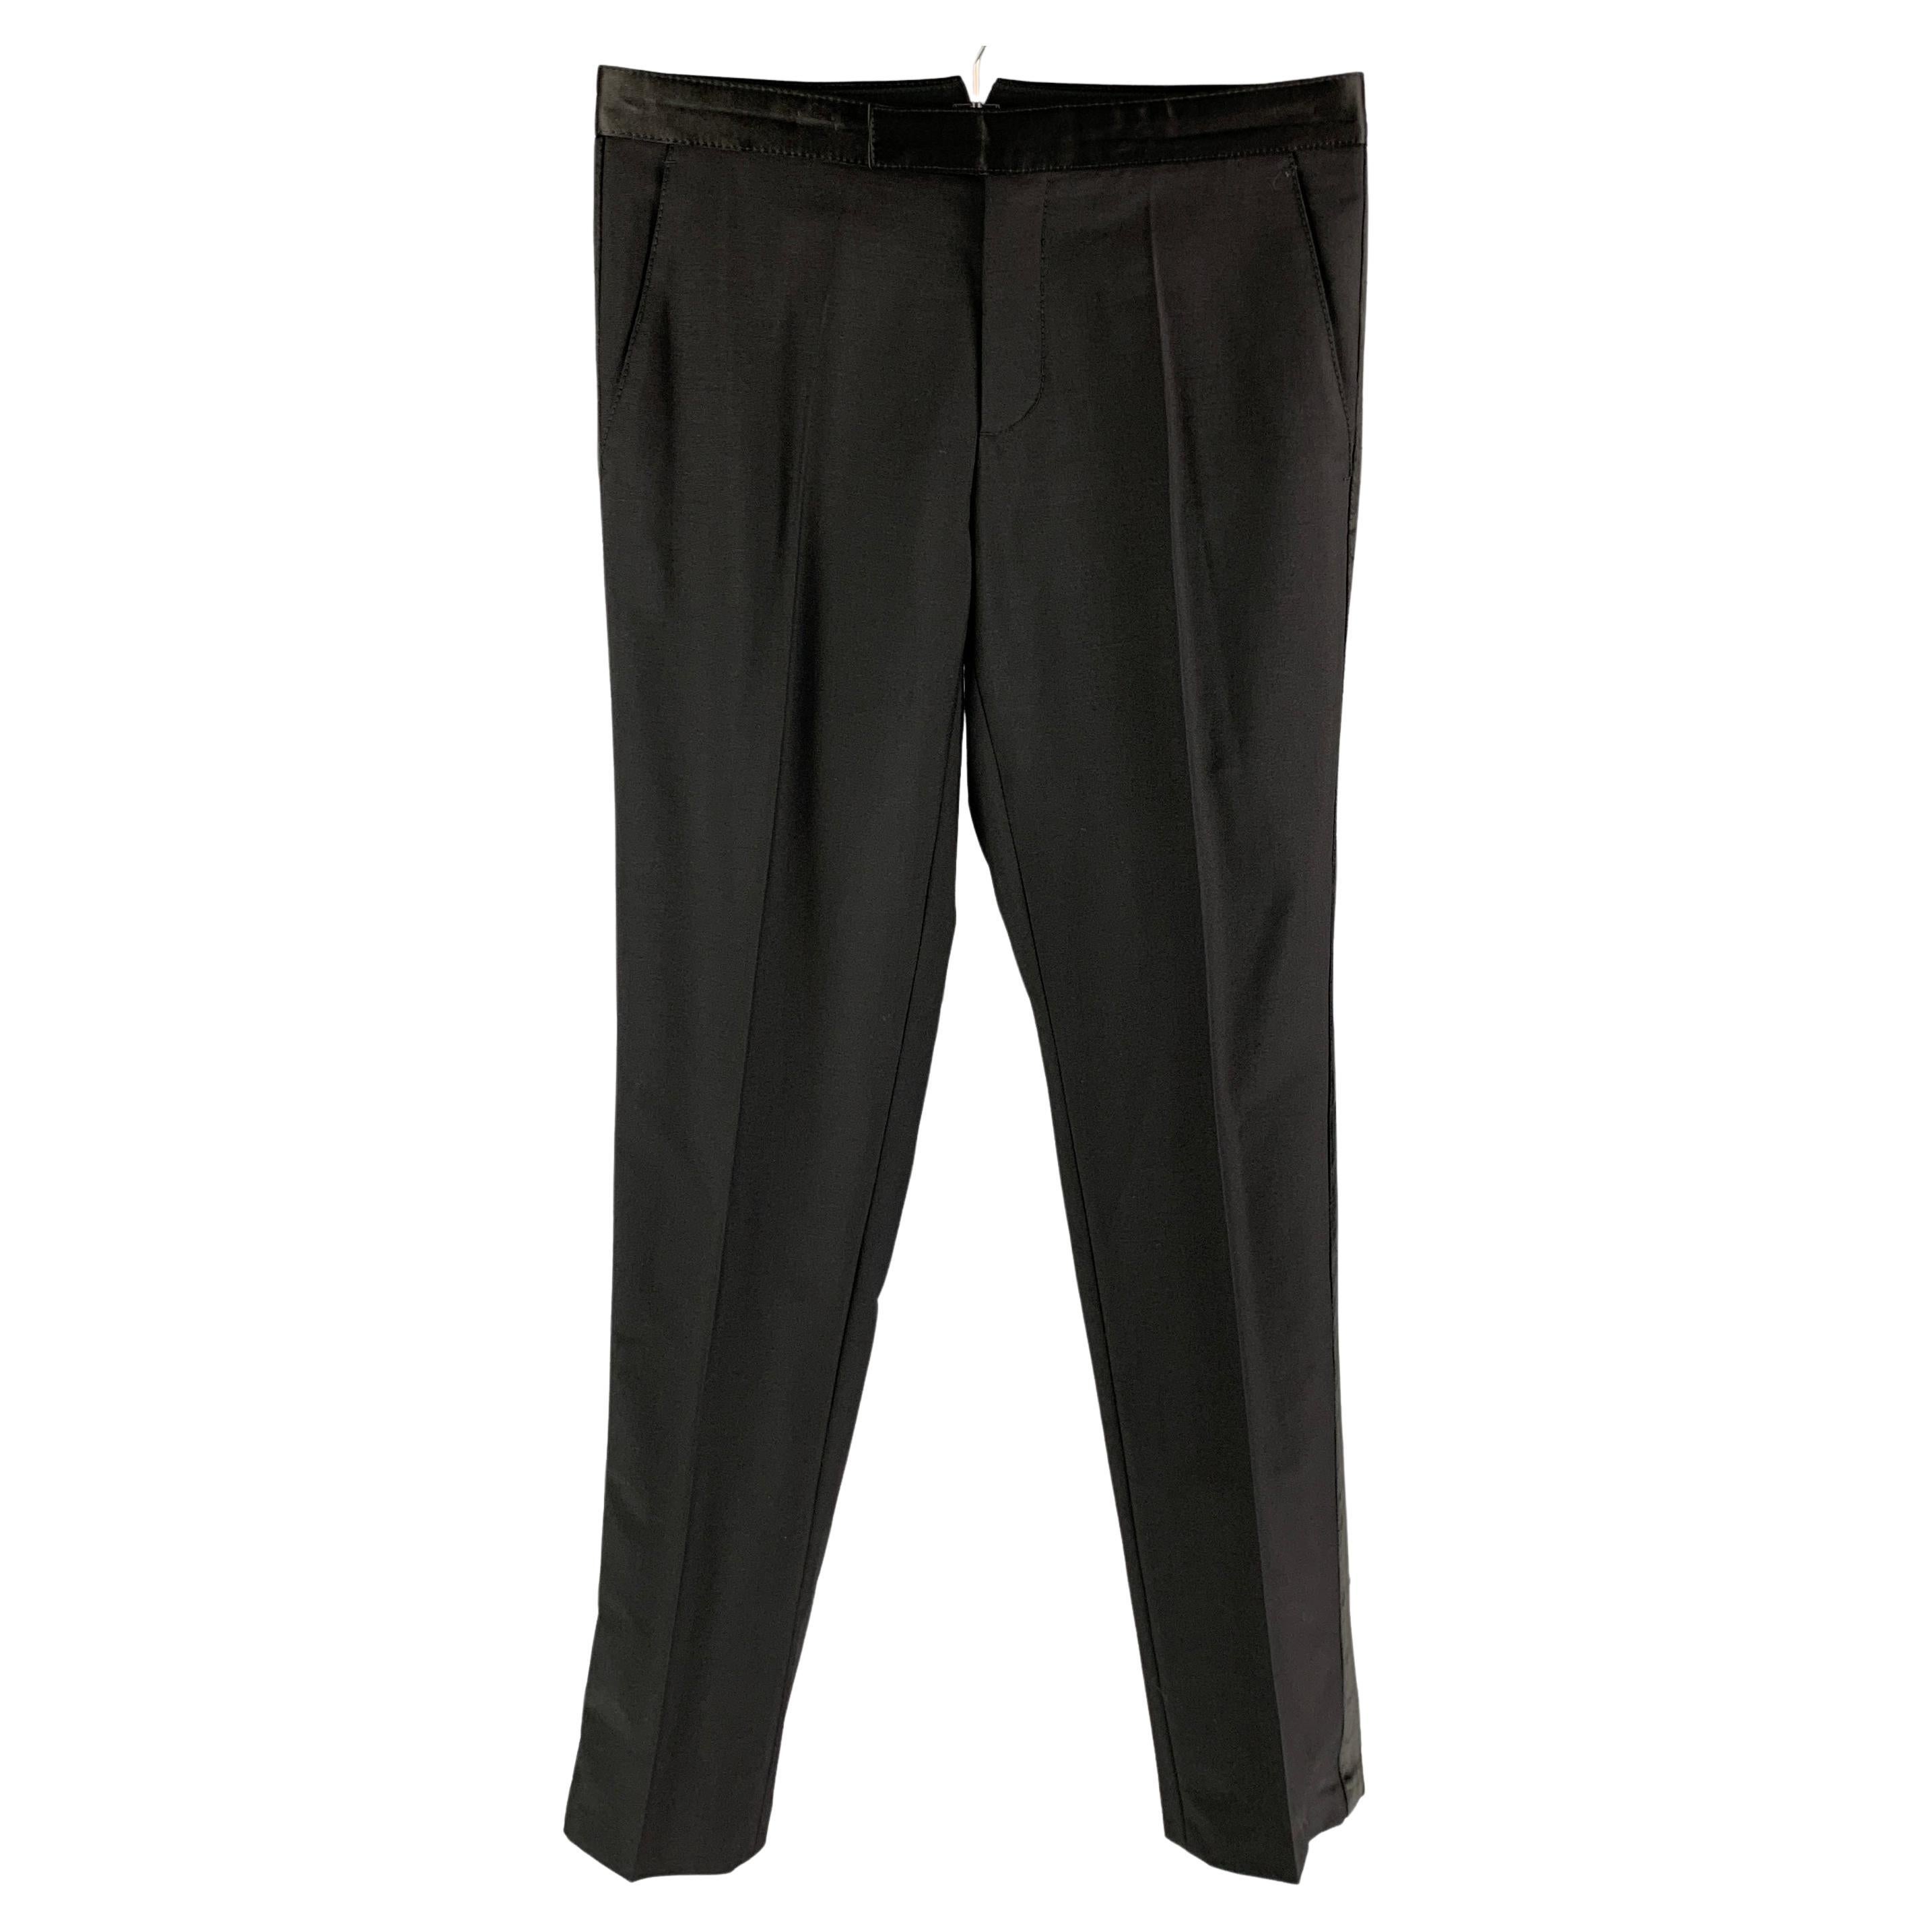 VIKTOR & ROLF Size 34 Black Wool / Mohair Tuxedo Dress Pants